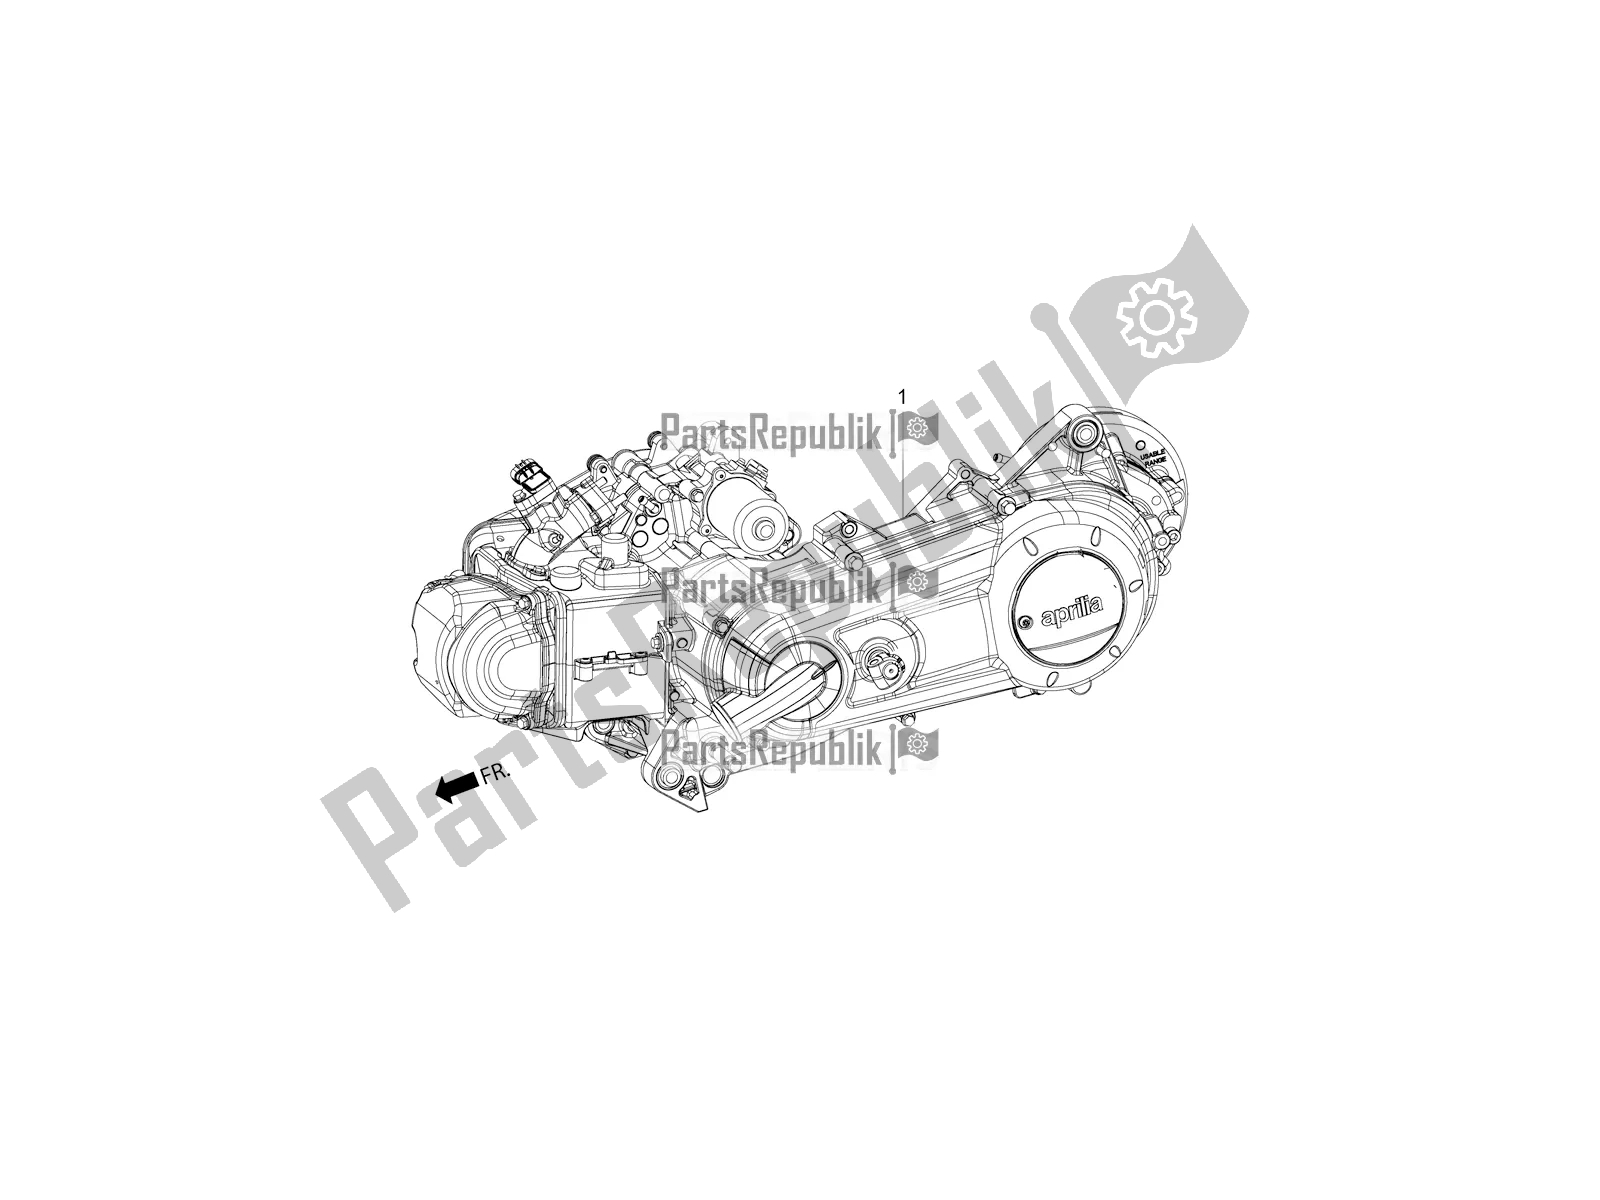 Toutes les pièces pour le Complete Engine du Aprilia SR Motard 150 ABS Apac 2021